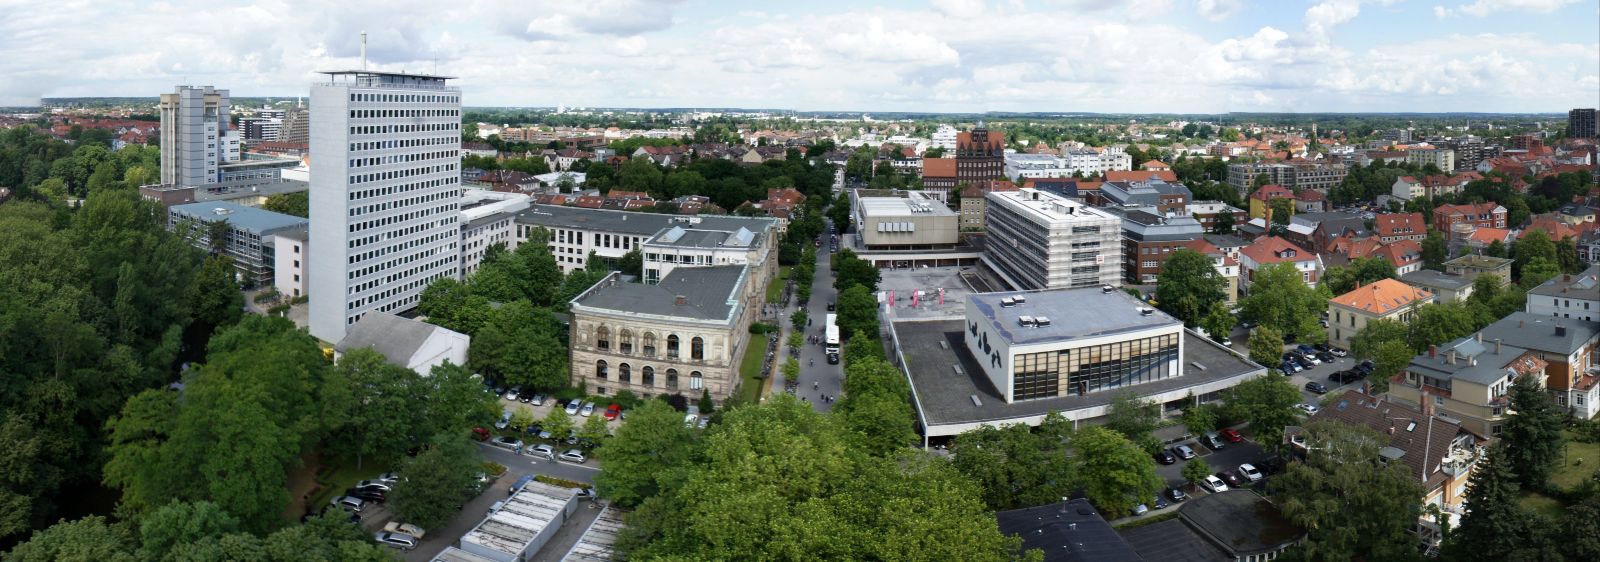 Luftbild des Zentralcampus der TU Braunschweig